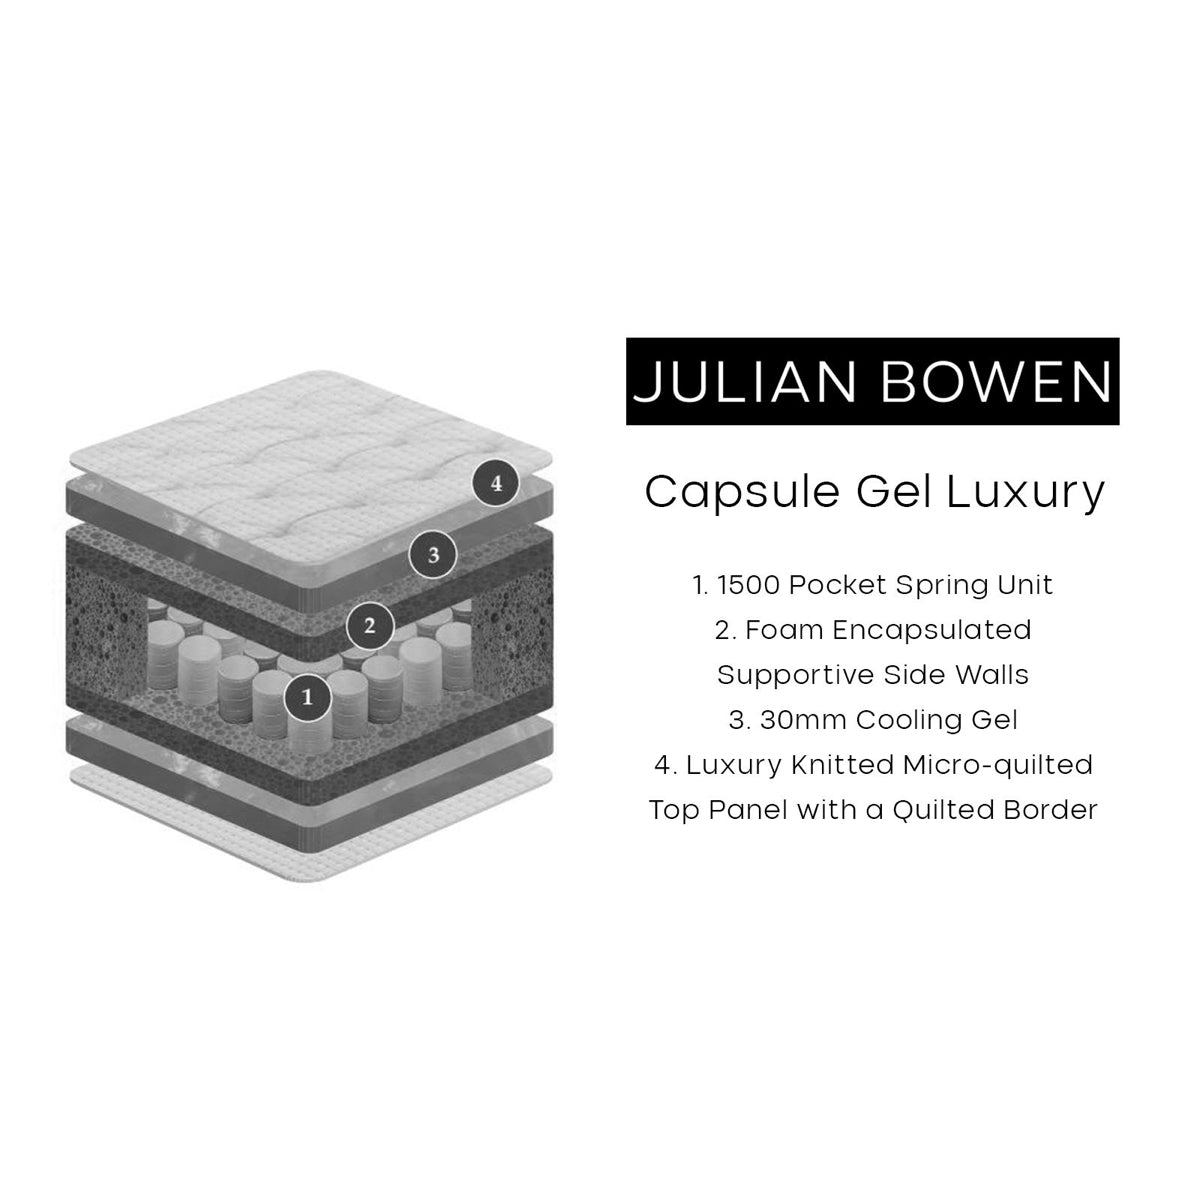 Julian Bowen, Capsule Gel Luxury 6ft Super King Size Mattress